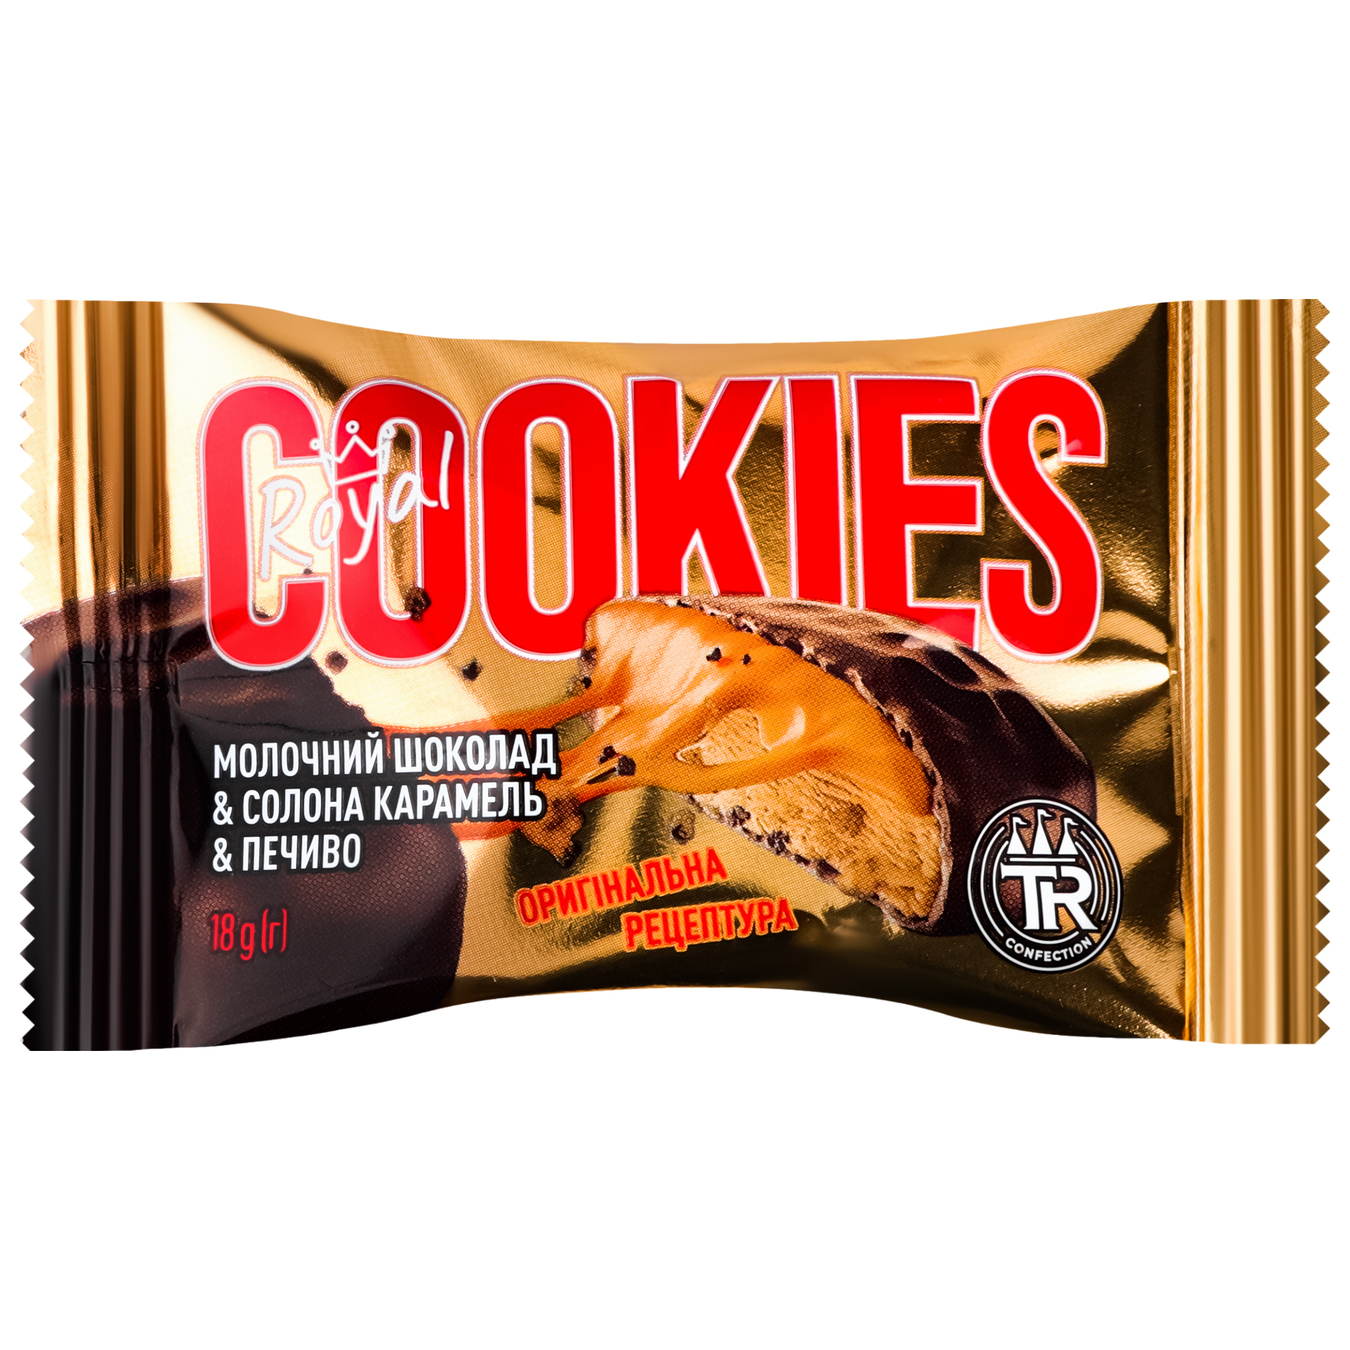 Печенье песочное Truff Royal Cookies Соленая карамель в молочном шоколаде 18г